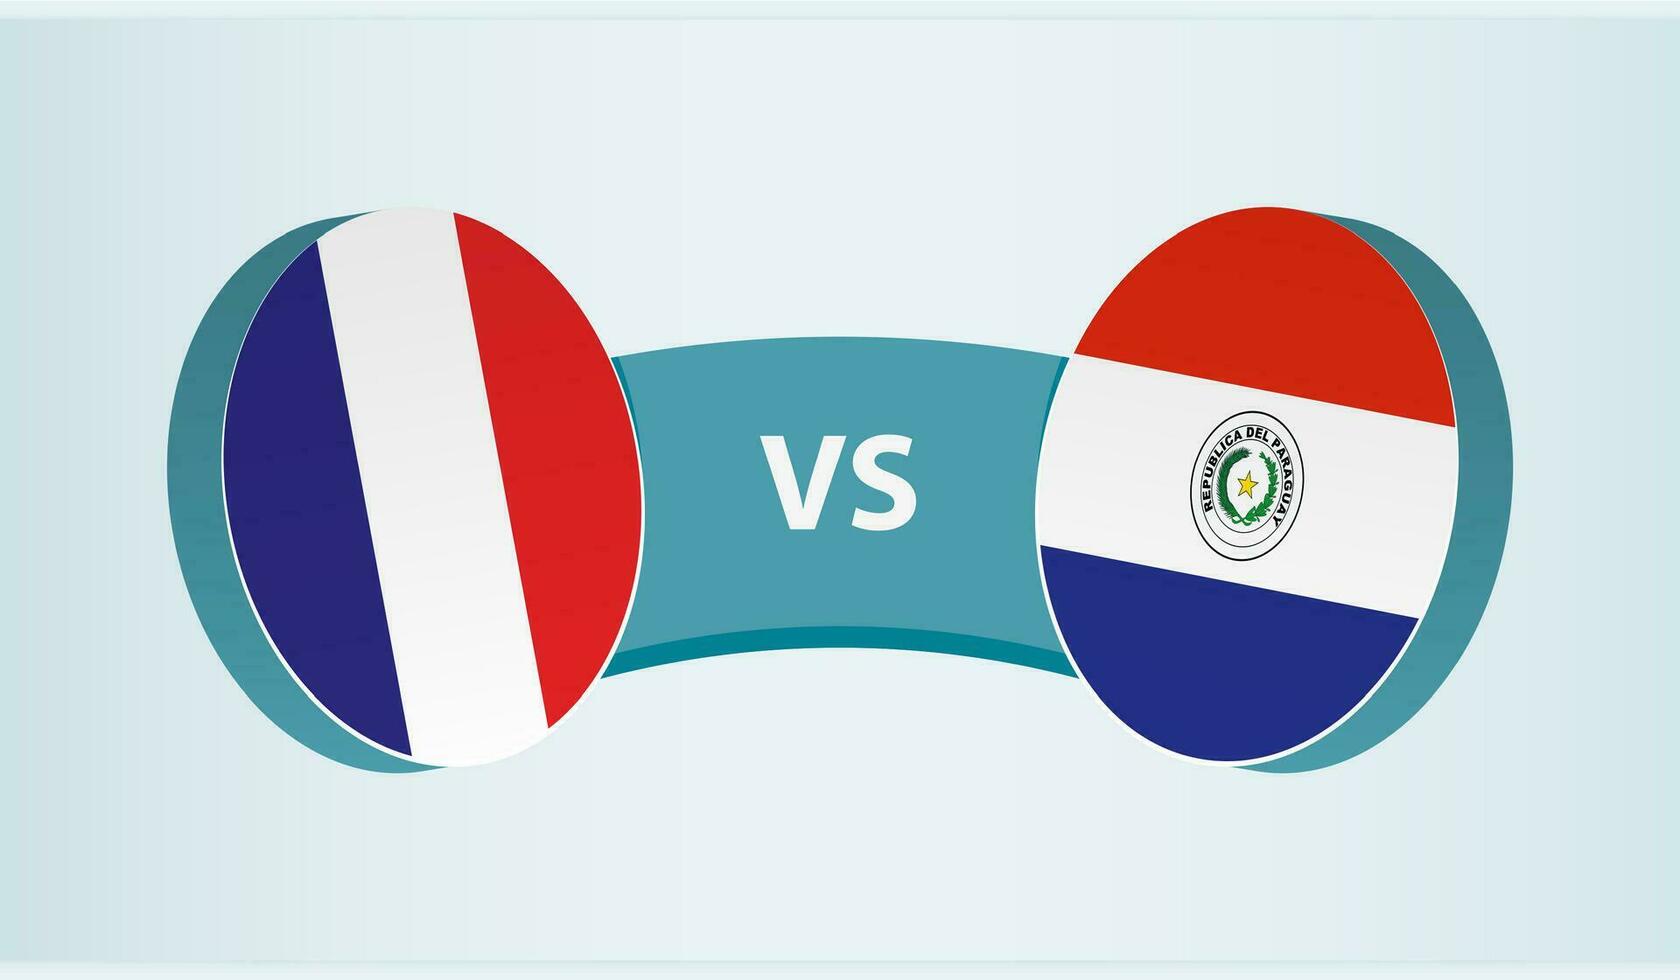 Frankrike mot paraguay, team sporter konkurrens begrepp. vektor